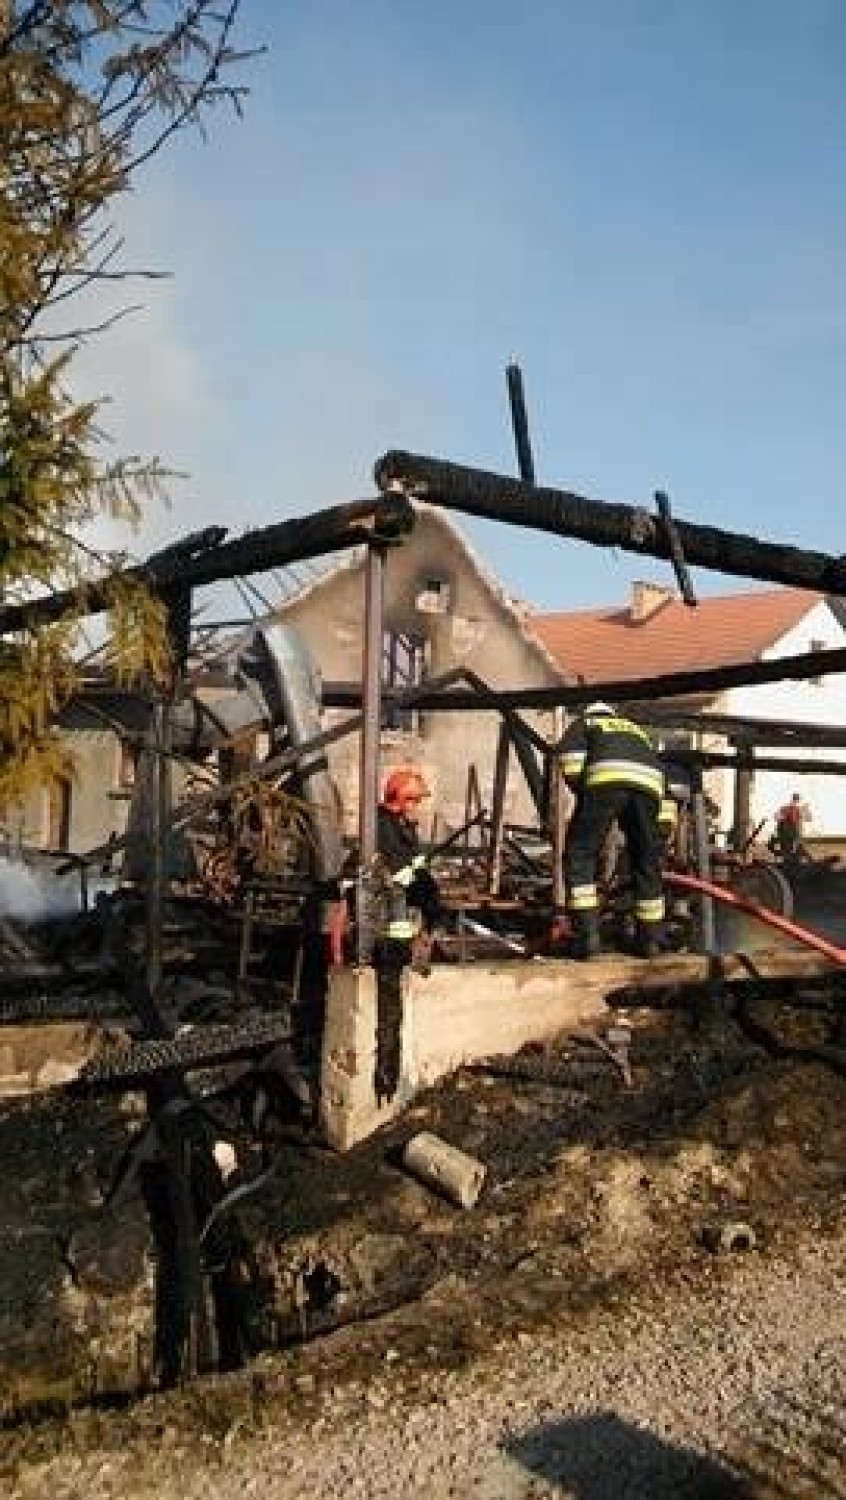 Pożar tartaku w Podchybiu. Dwie osoby poszkodowane [ZDJĘCIA]